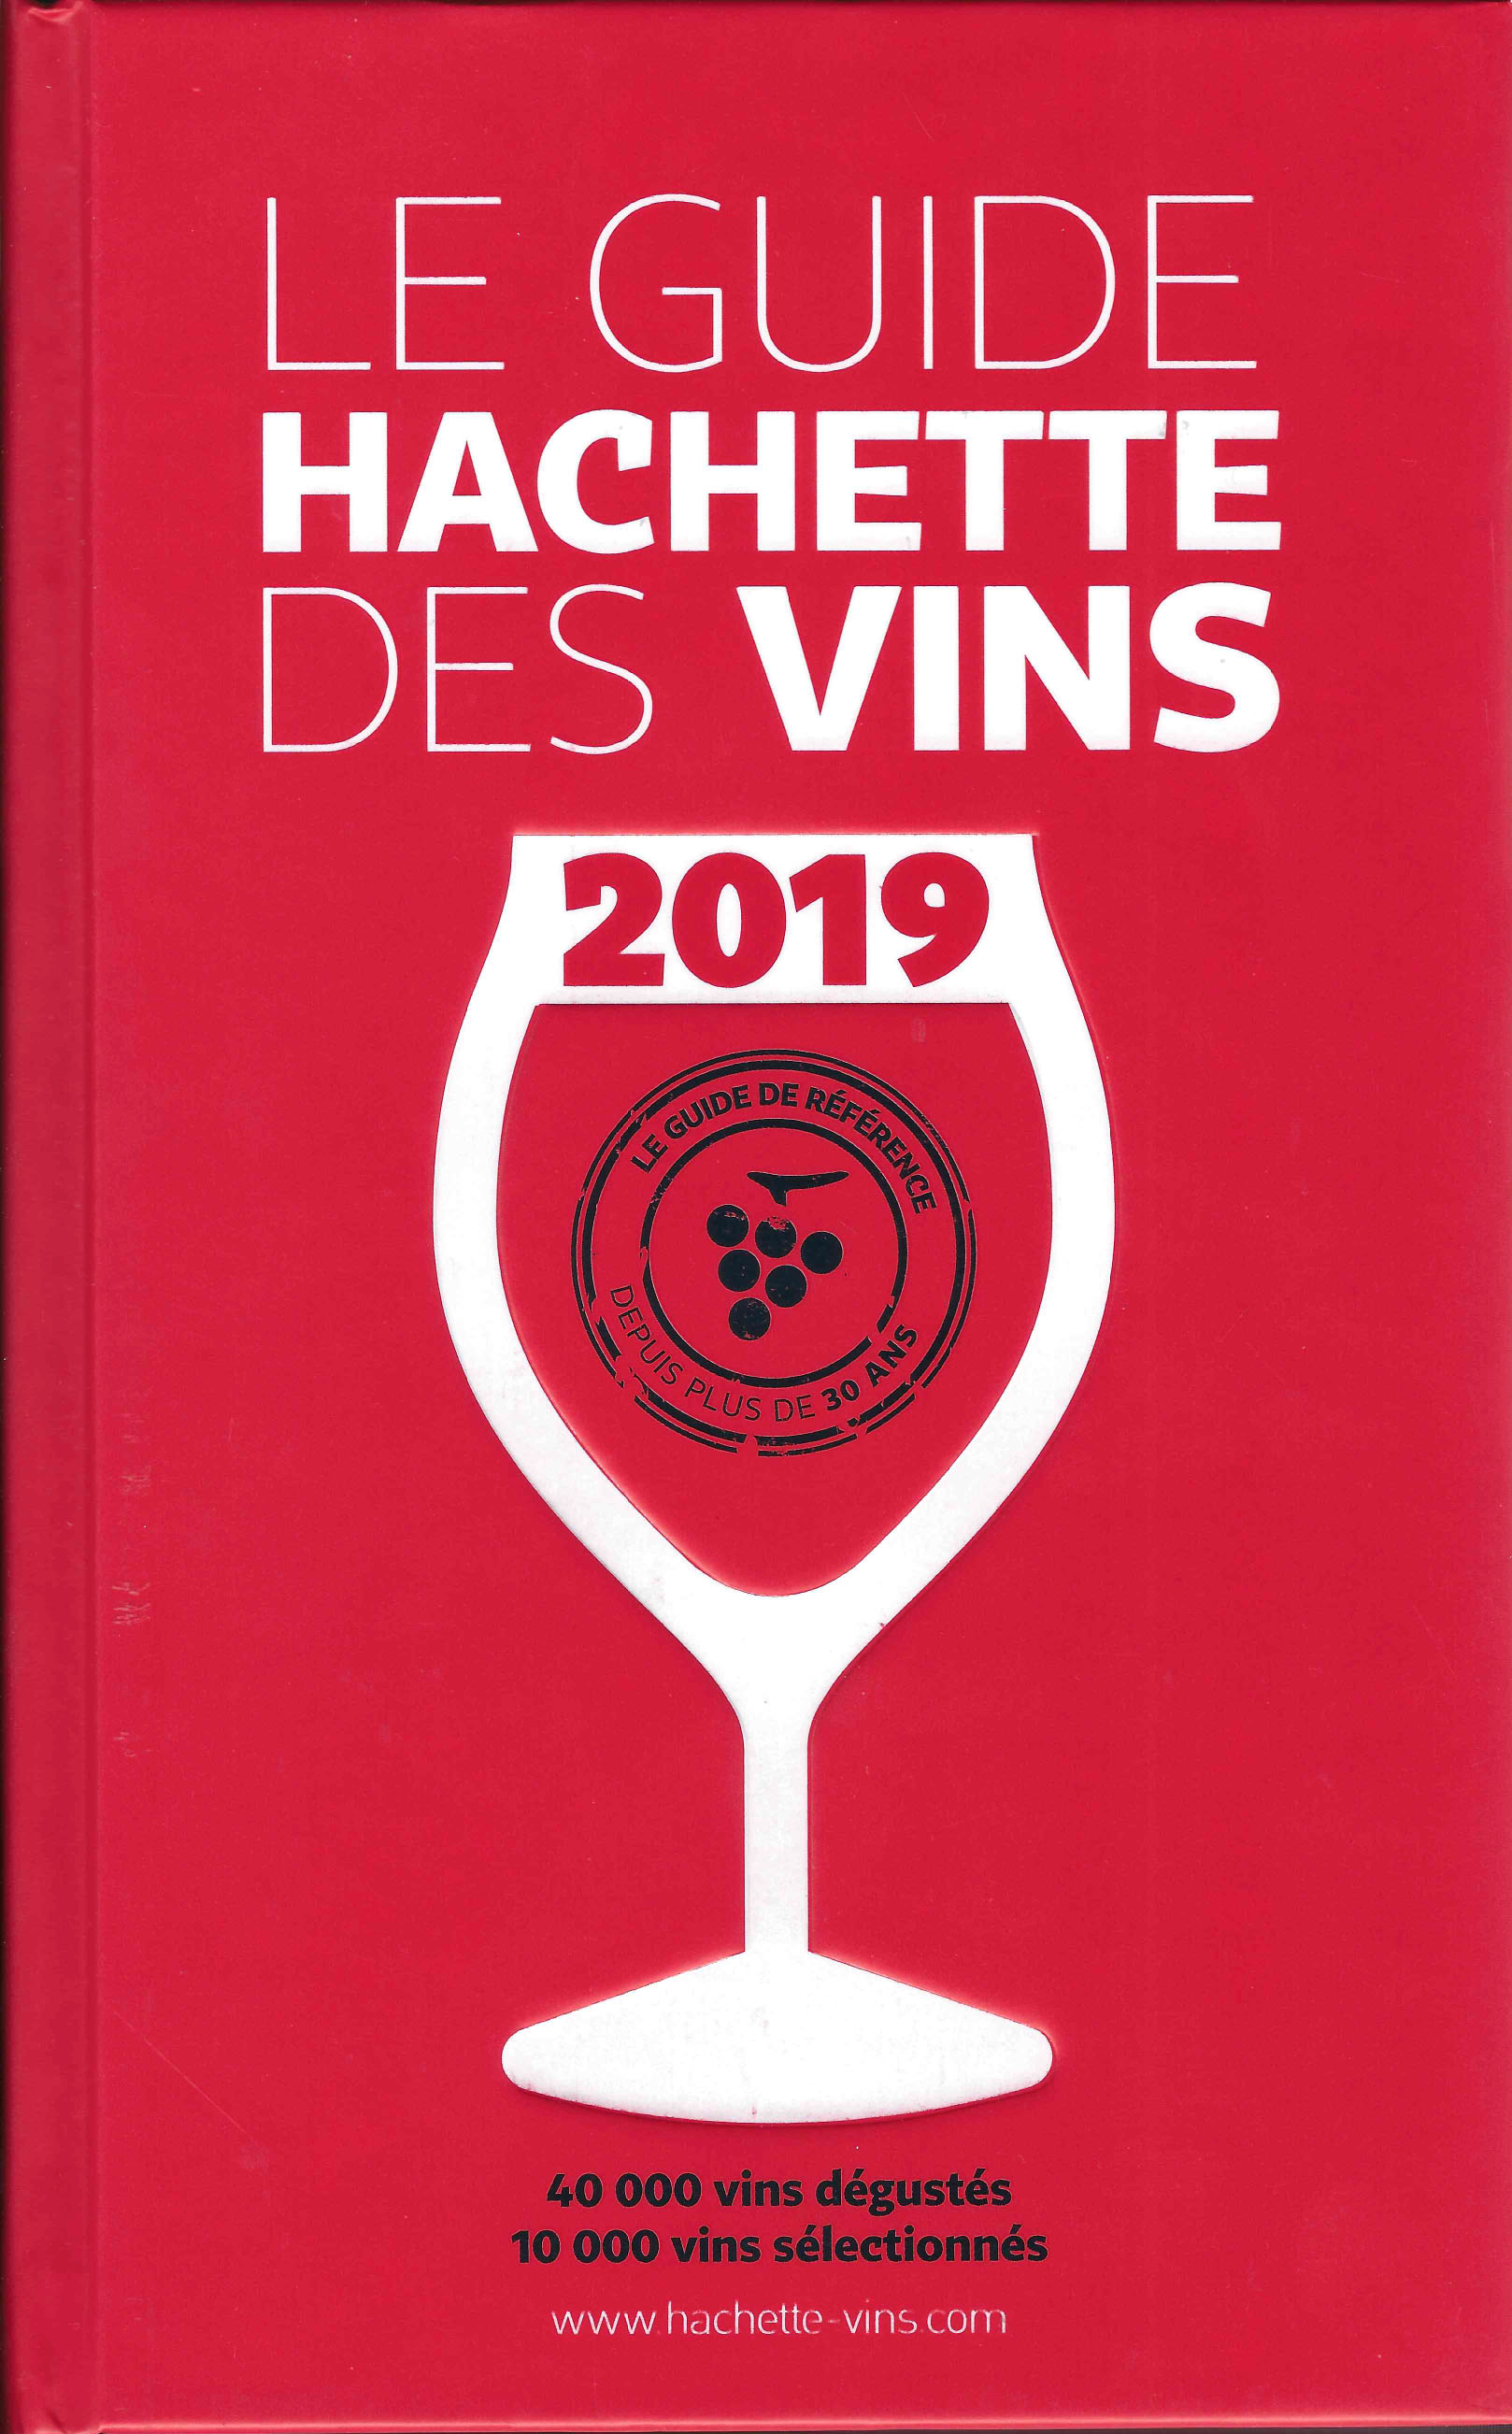 Le Guide Hachette des Vins 2019